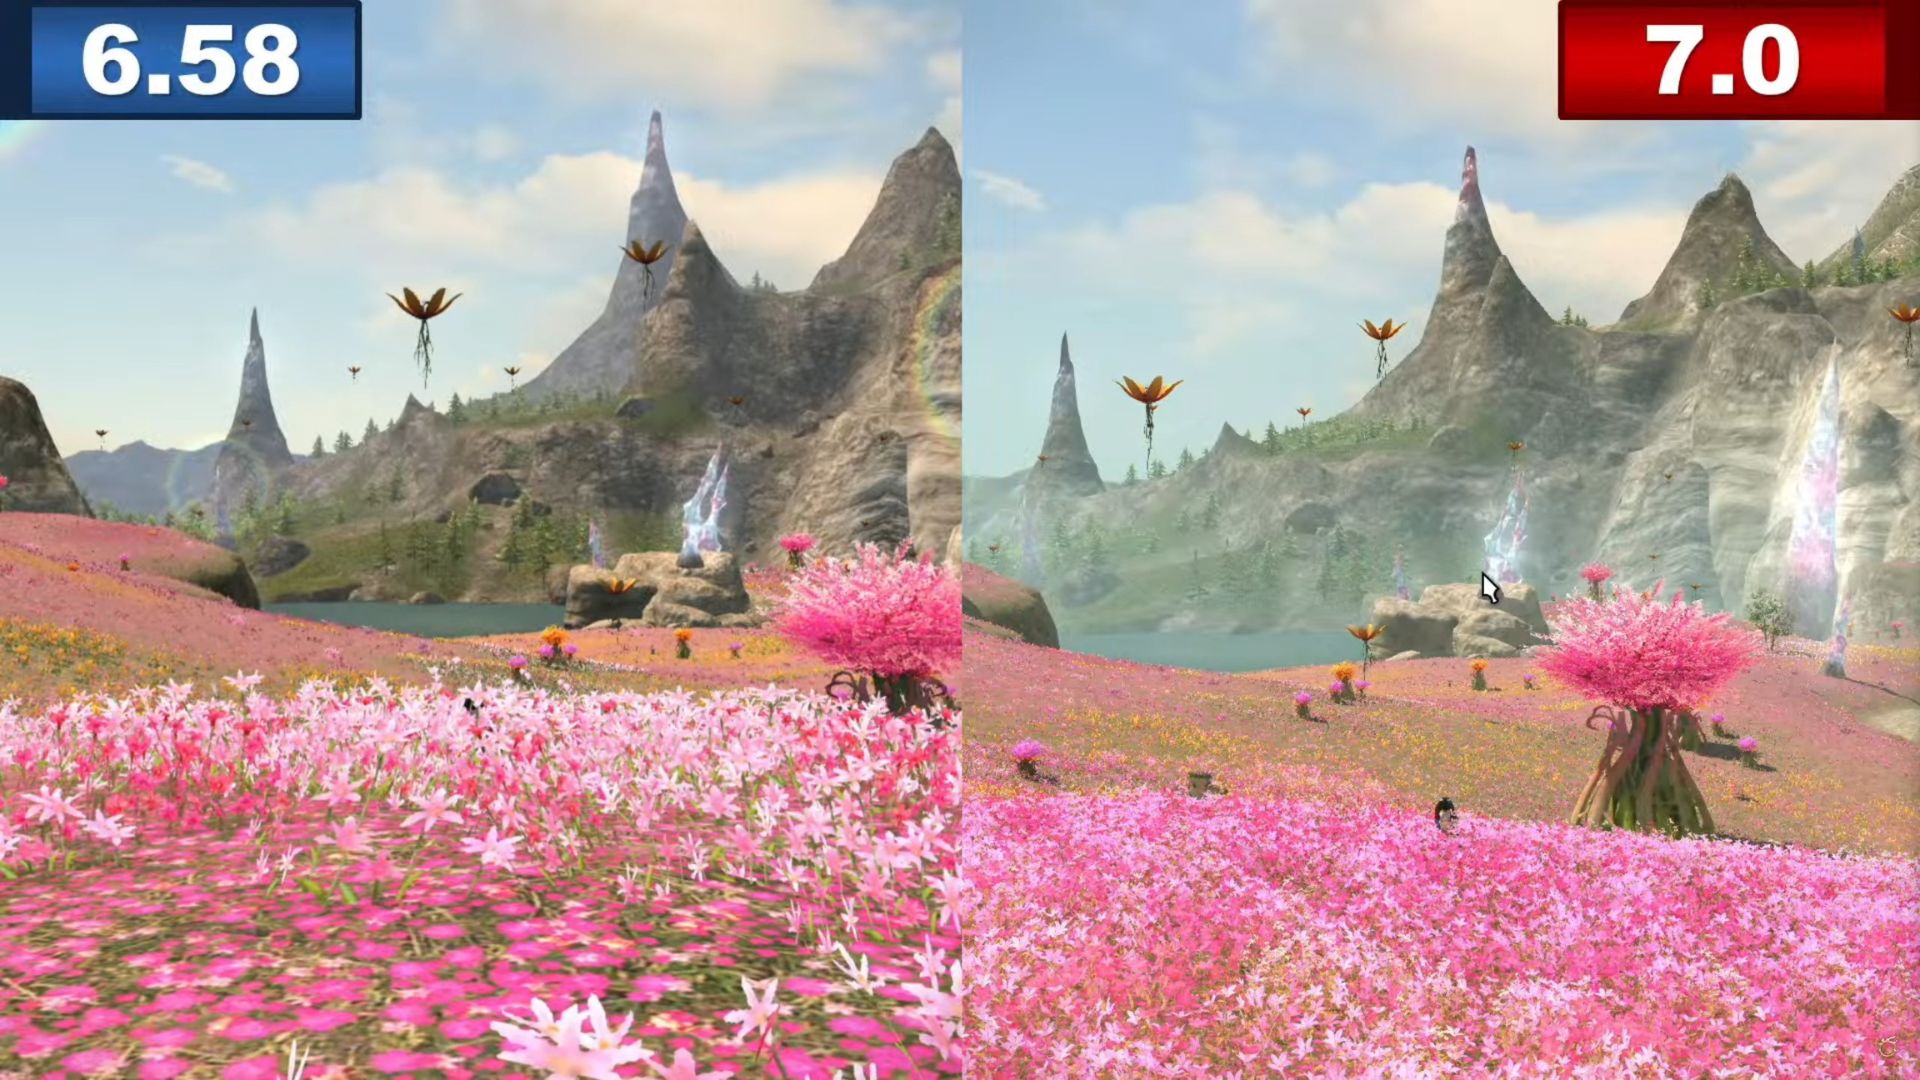 Dawntrail, punto de referencia de Final Fantasy 14: dos tomas de campos de flores rosas, la derecha tiene mejor calidad que la izquierda